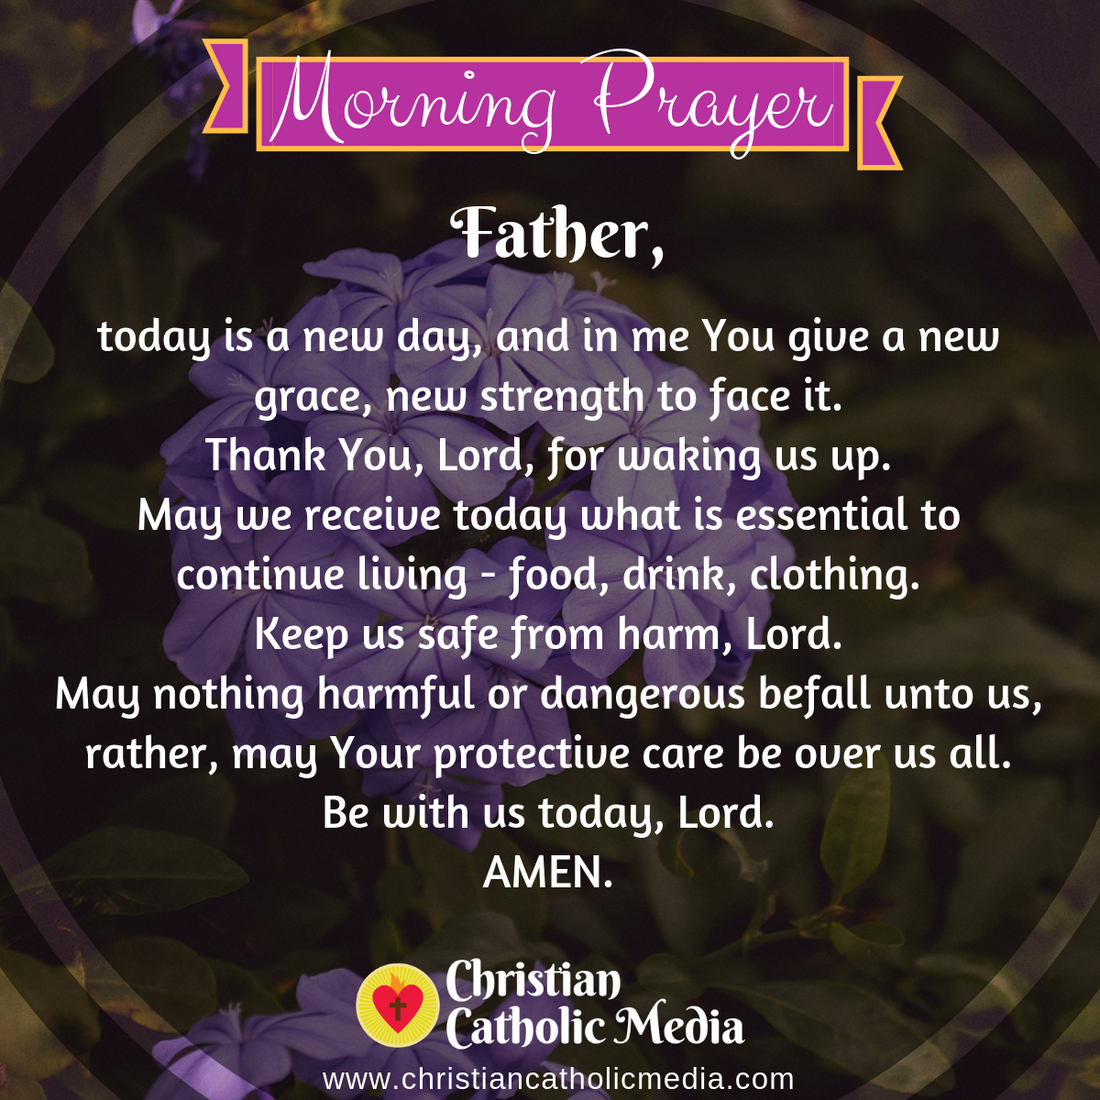 Morning Prayer Catholic Tuesday 2-11-2020